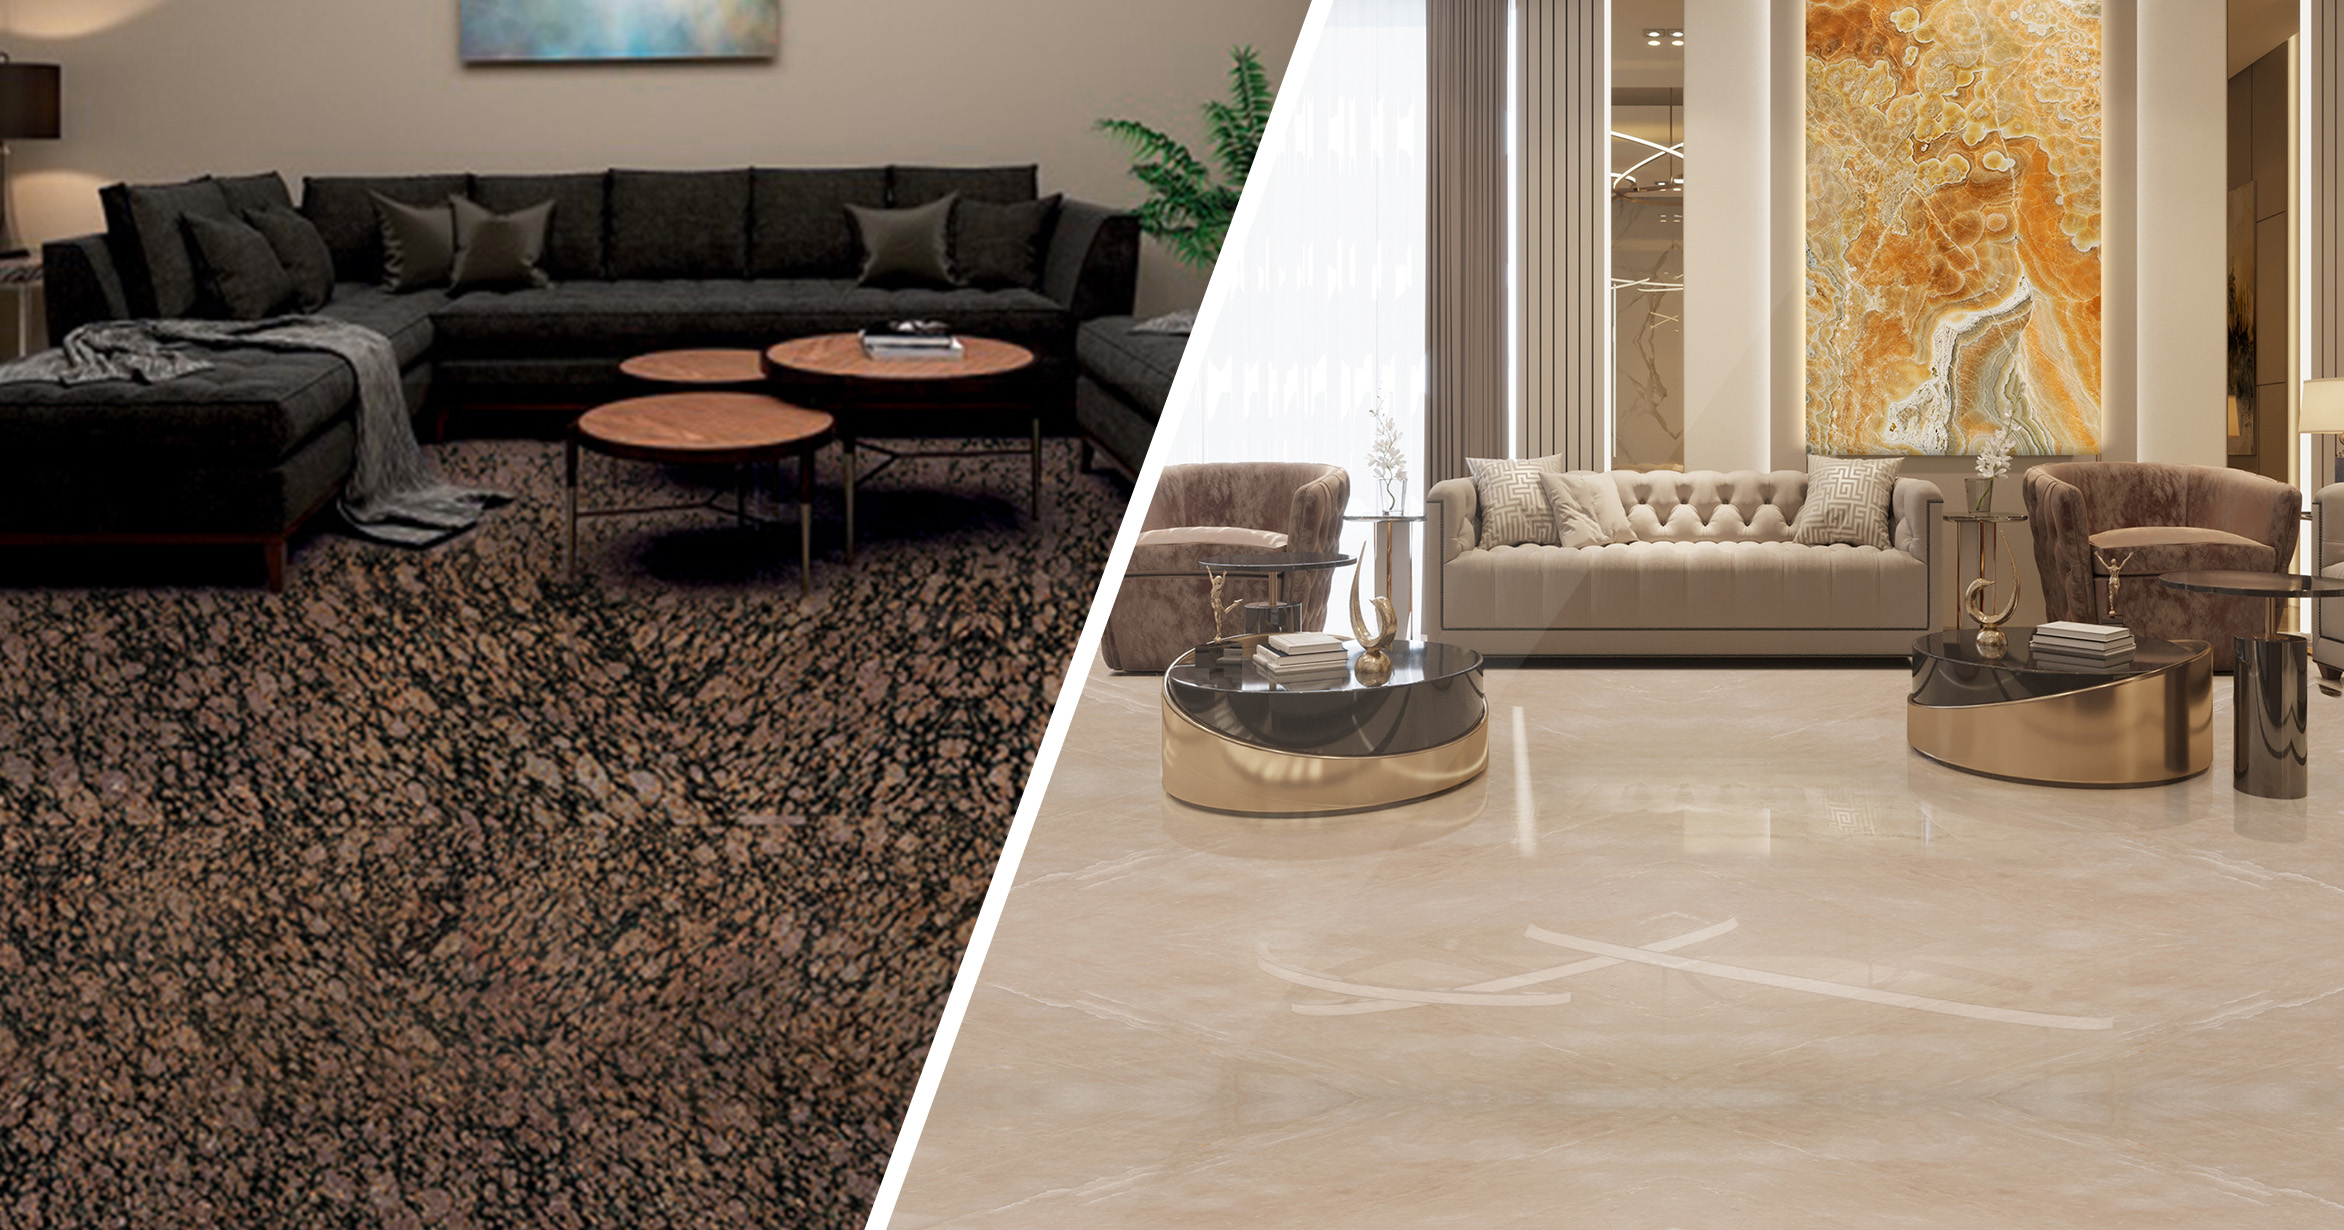 Granite floor vs. Marble floor: Granite flooring is durable and desirable in high-traffic areas